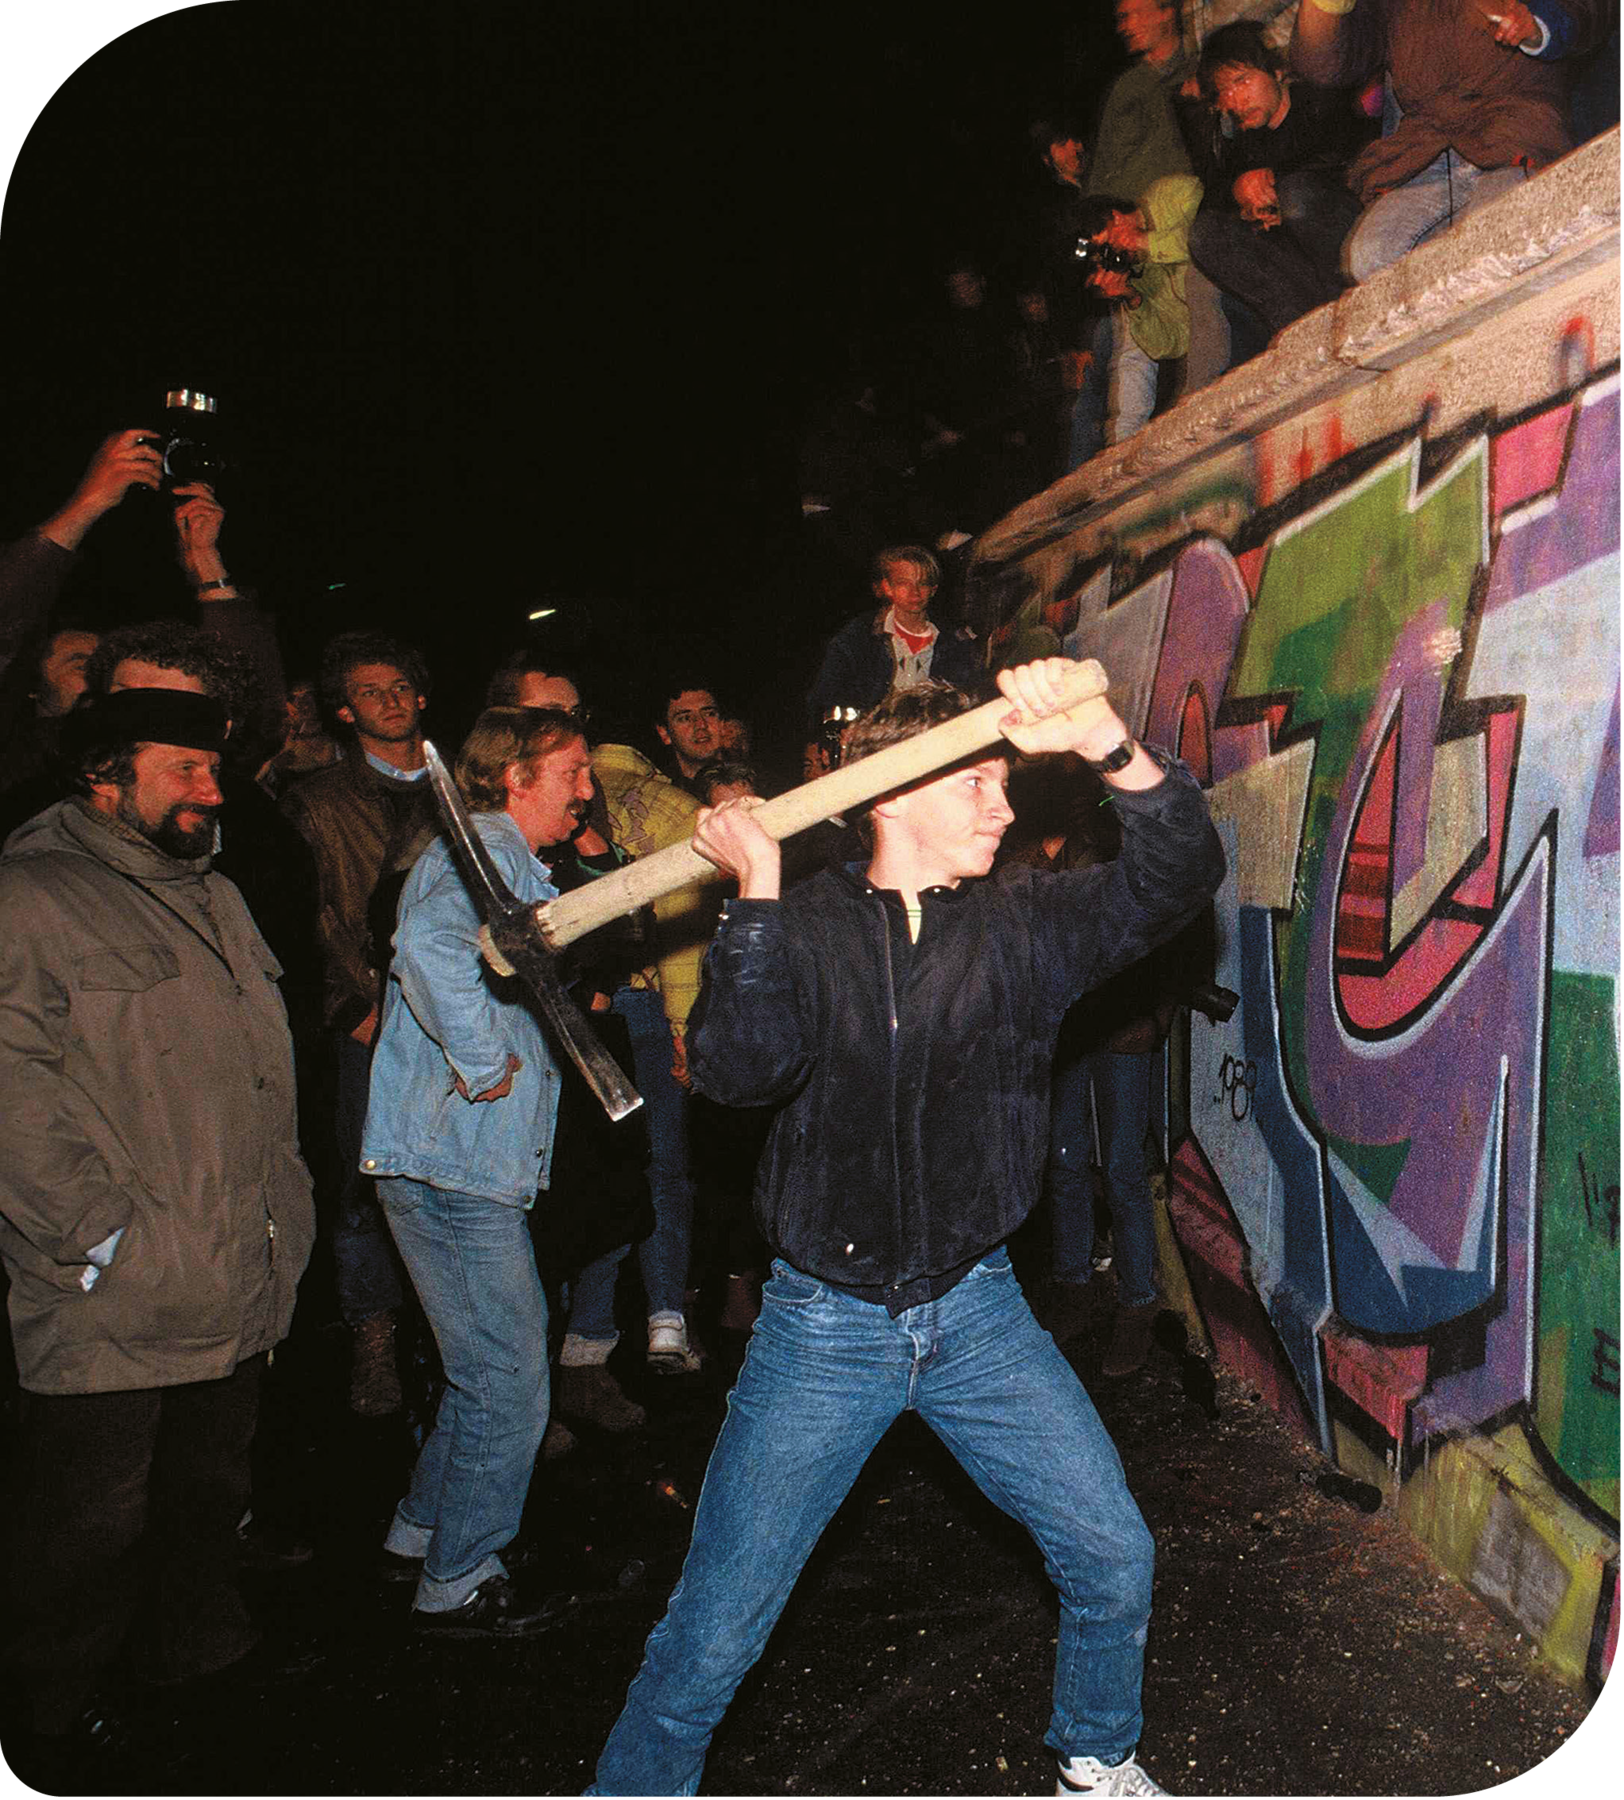 Fotografia. Um jovem, usando casaco e calça jeans, está de perfil, segurando com as mãos uma picareta na direção de um muro. Ao redor, diversas pessoas olhando.